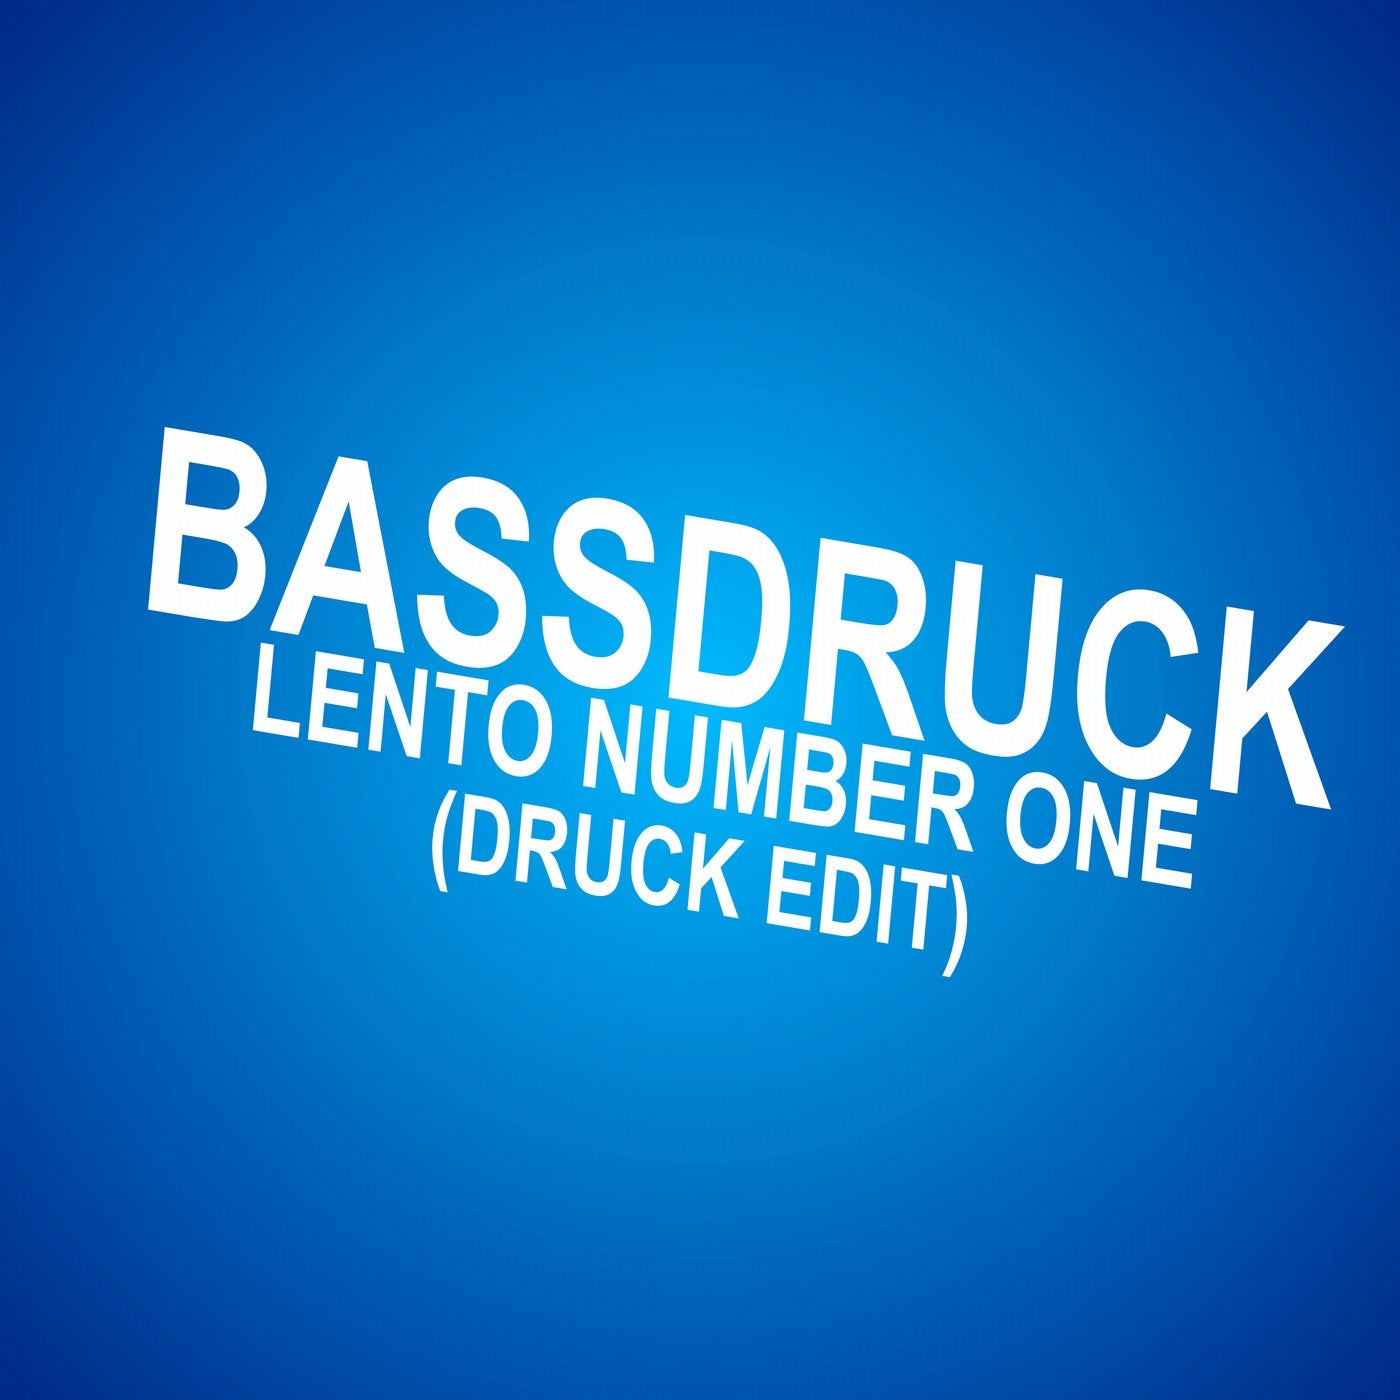 Lento Number One(Druck Edit)